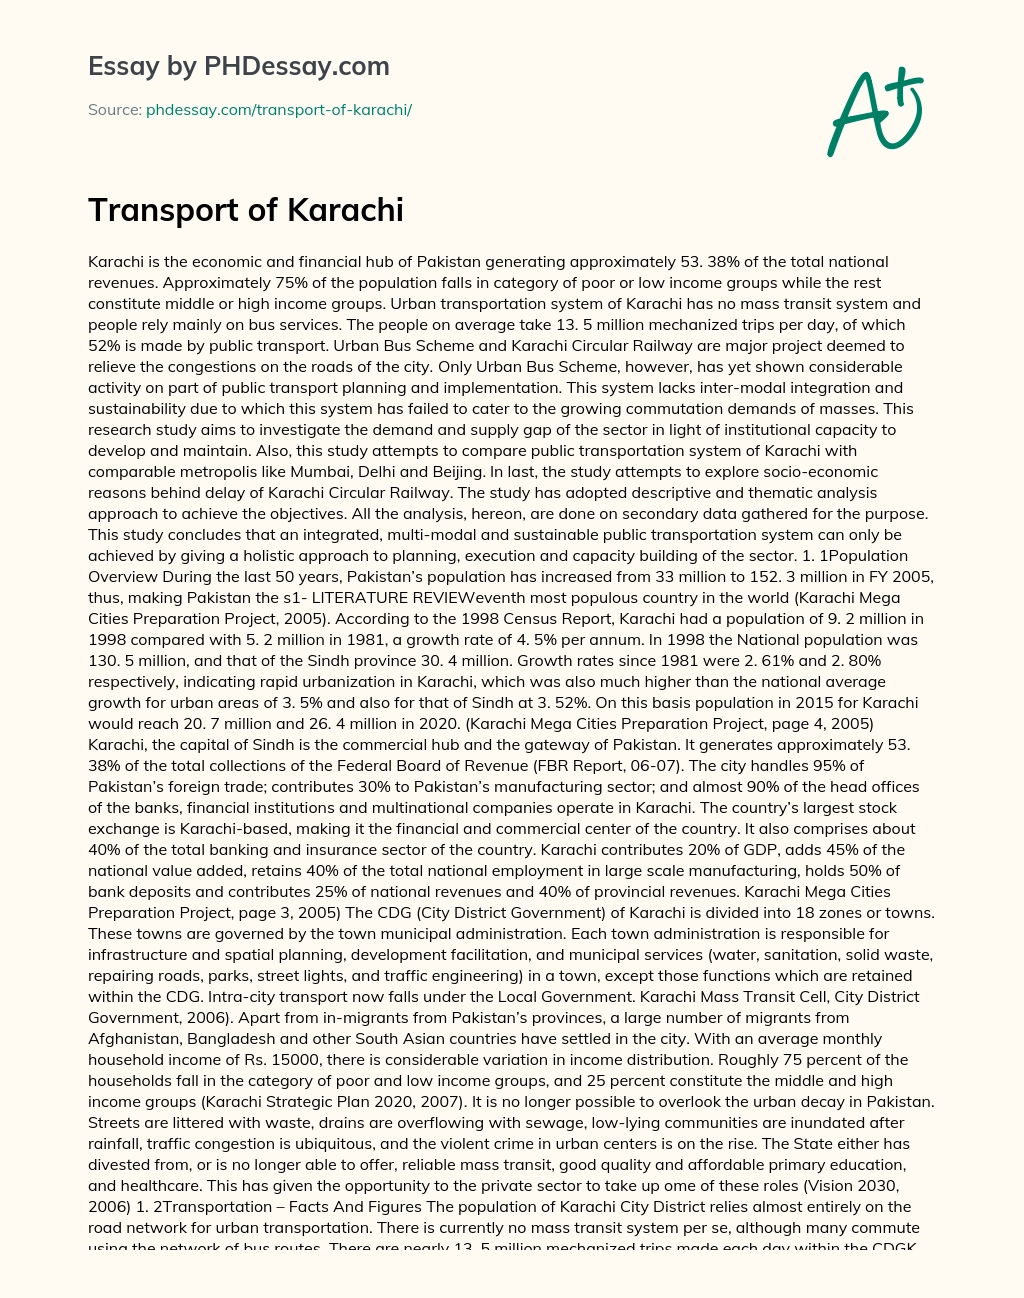 Transport of Karachi essay